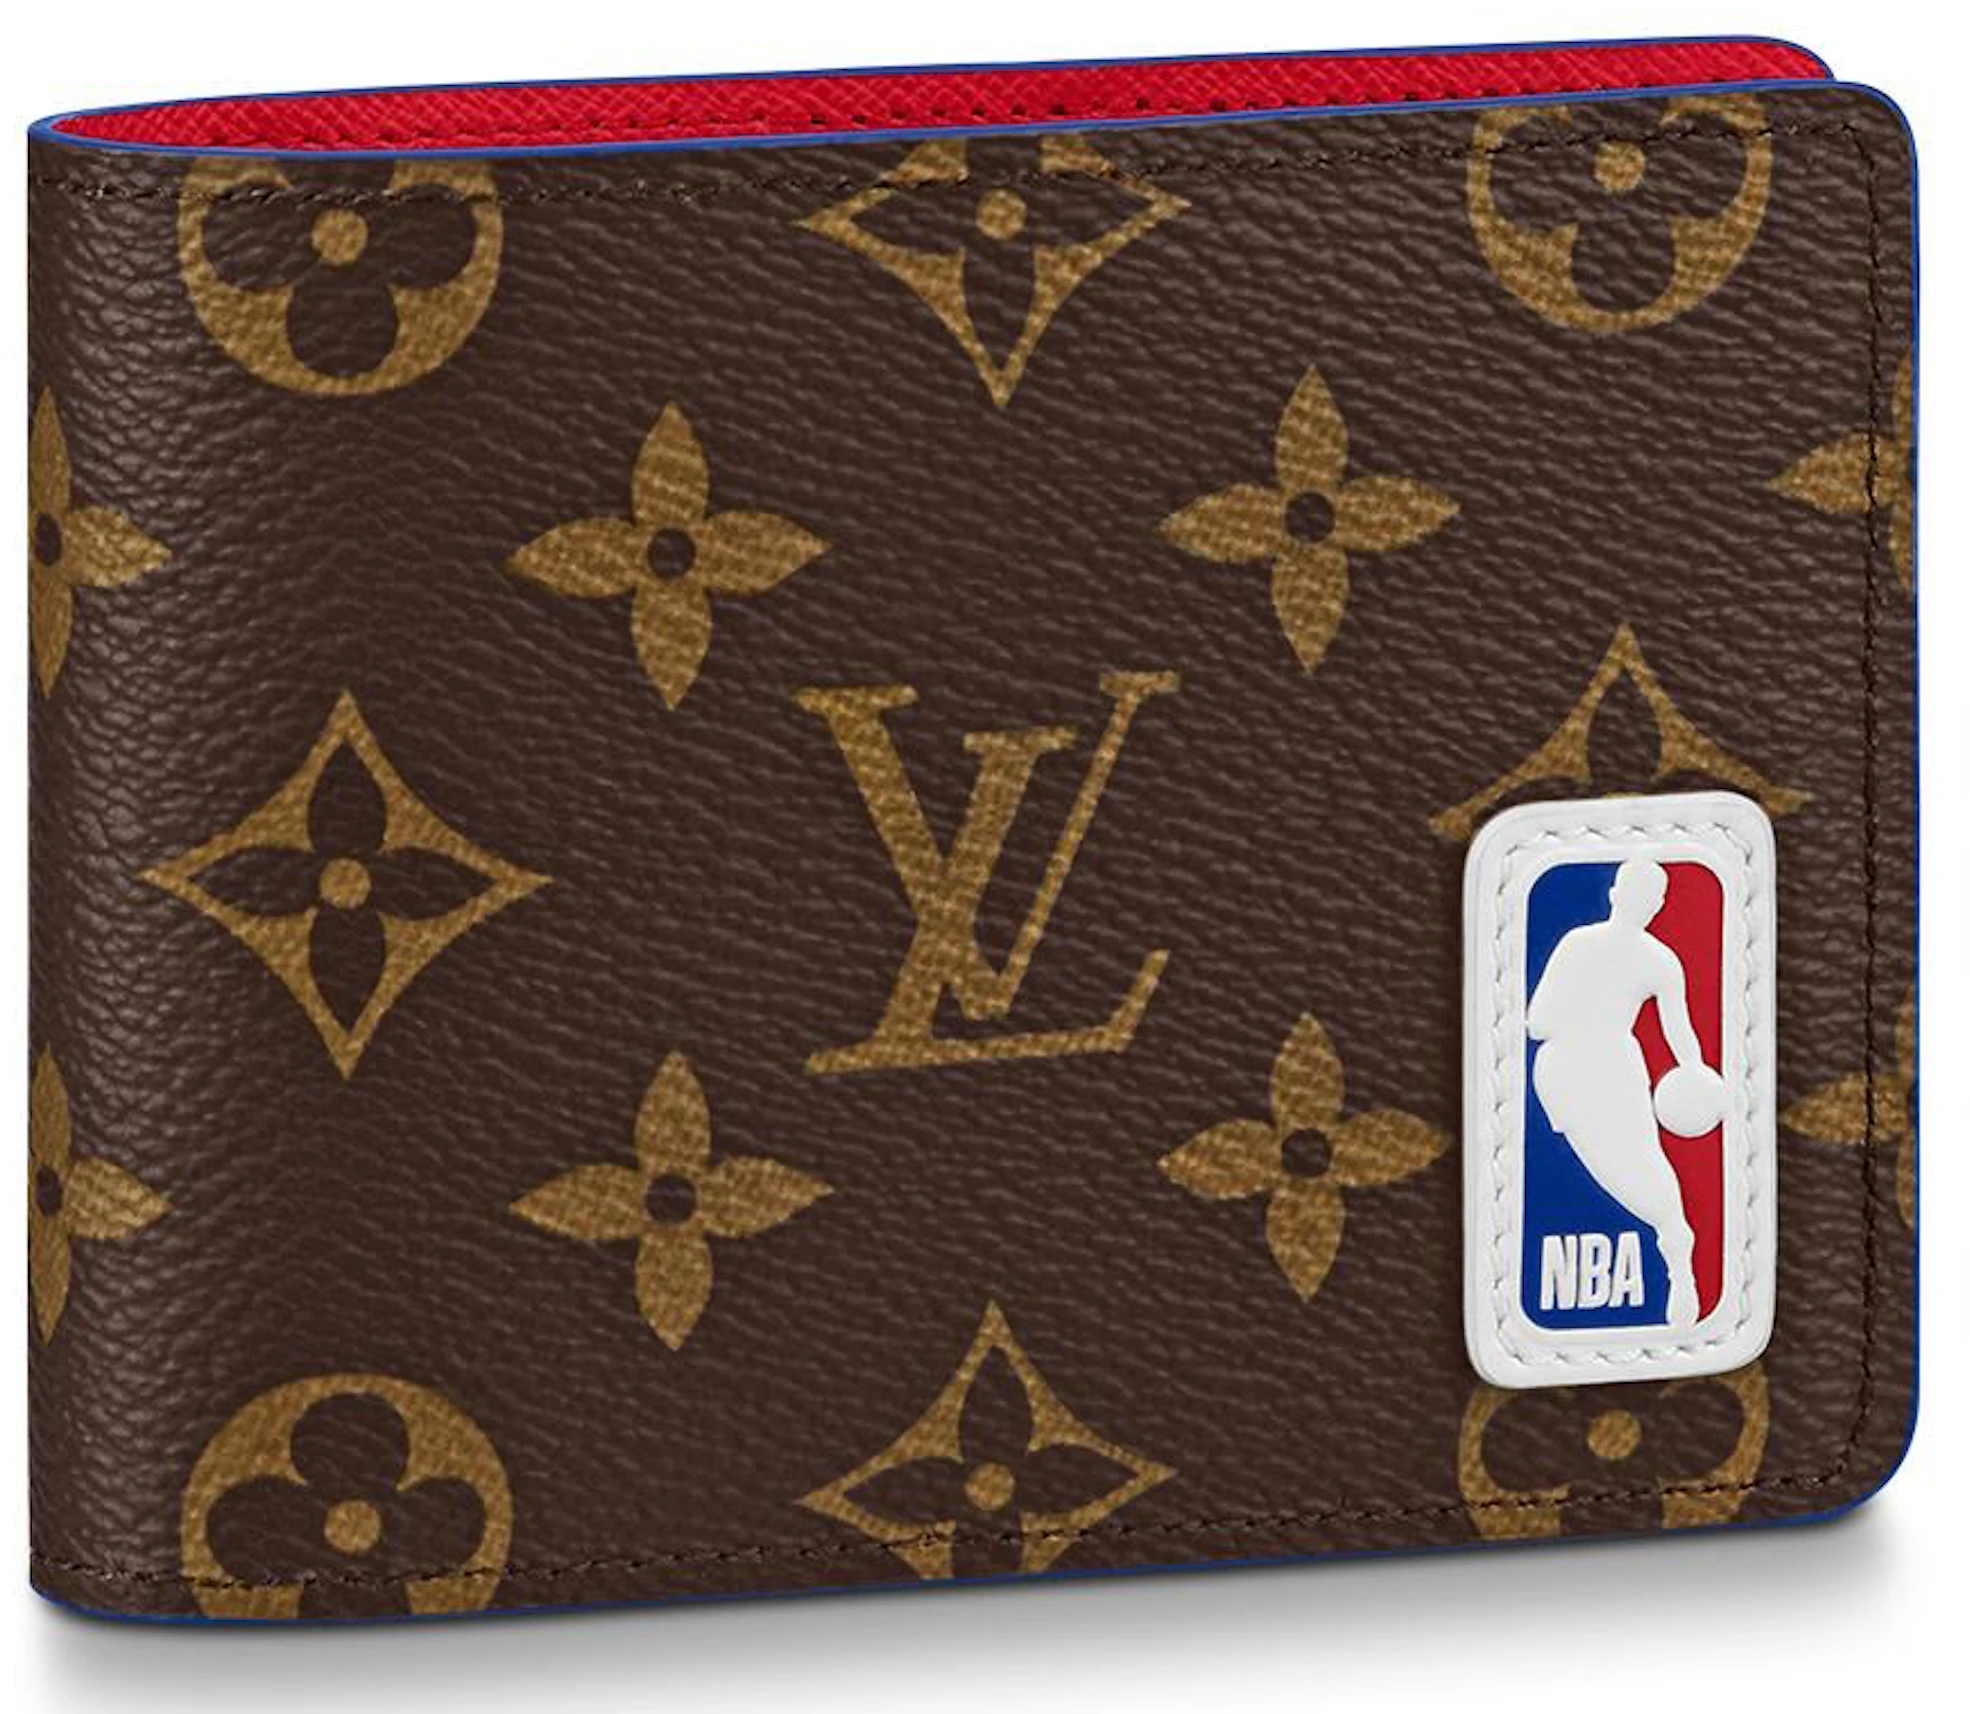 bijzonder Hervat ga zo door Louis Vuitton x NBA Multiple Wallet Monogram in Coated Canvas - US